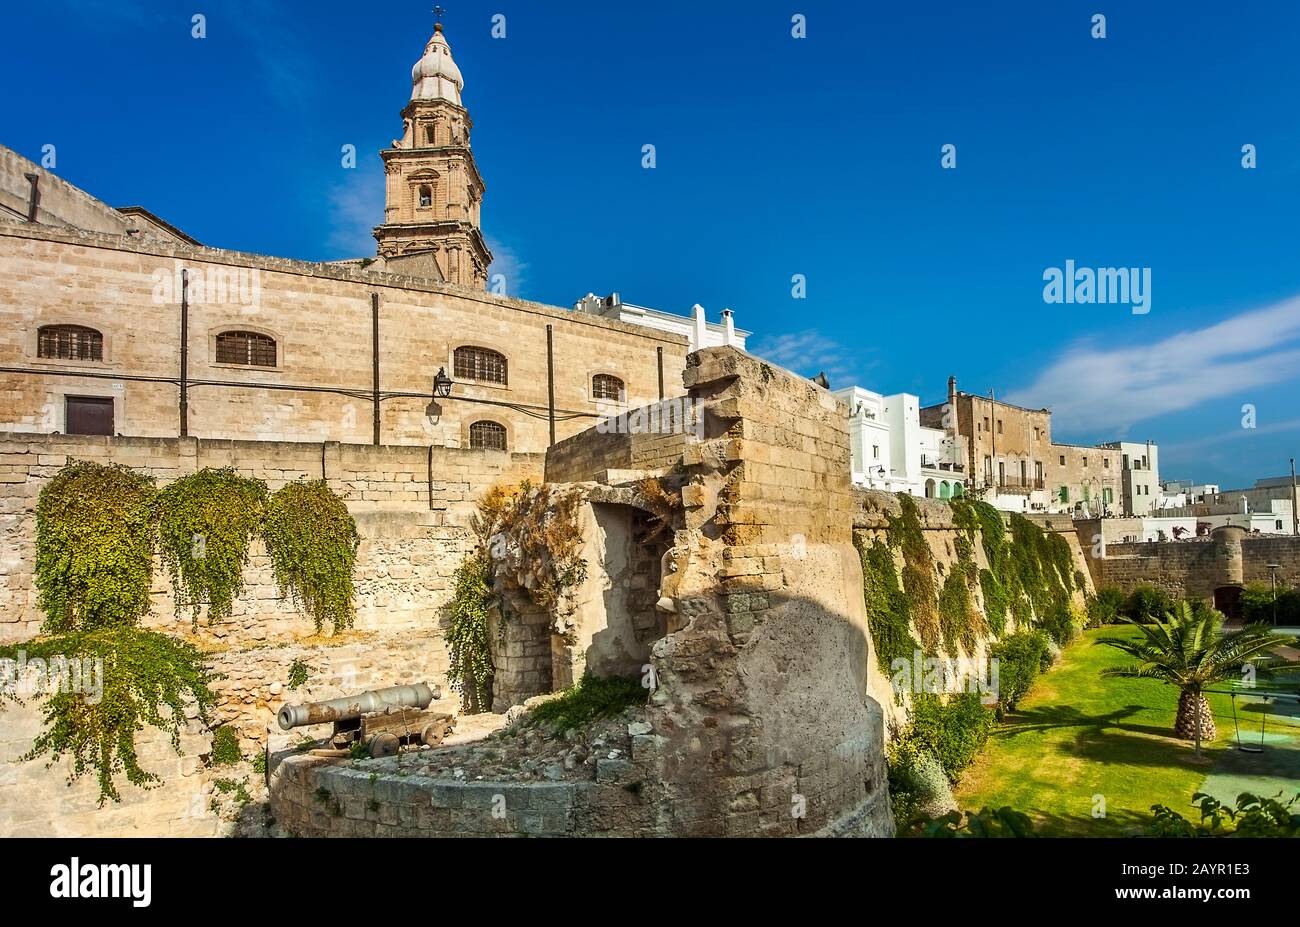 The historic city wall Il Bastione del Molino from Monopoli Apulia Italy Stock Photo